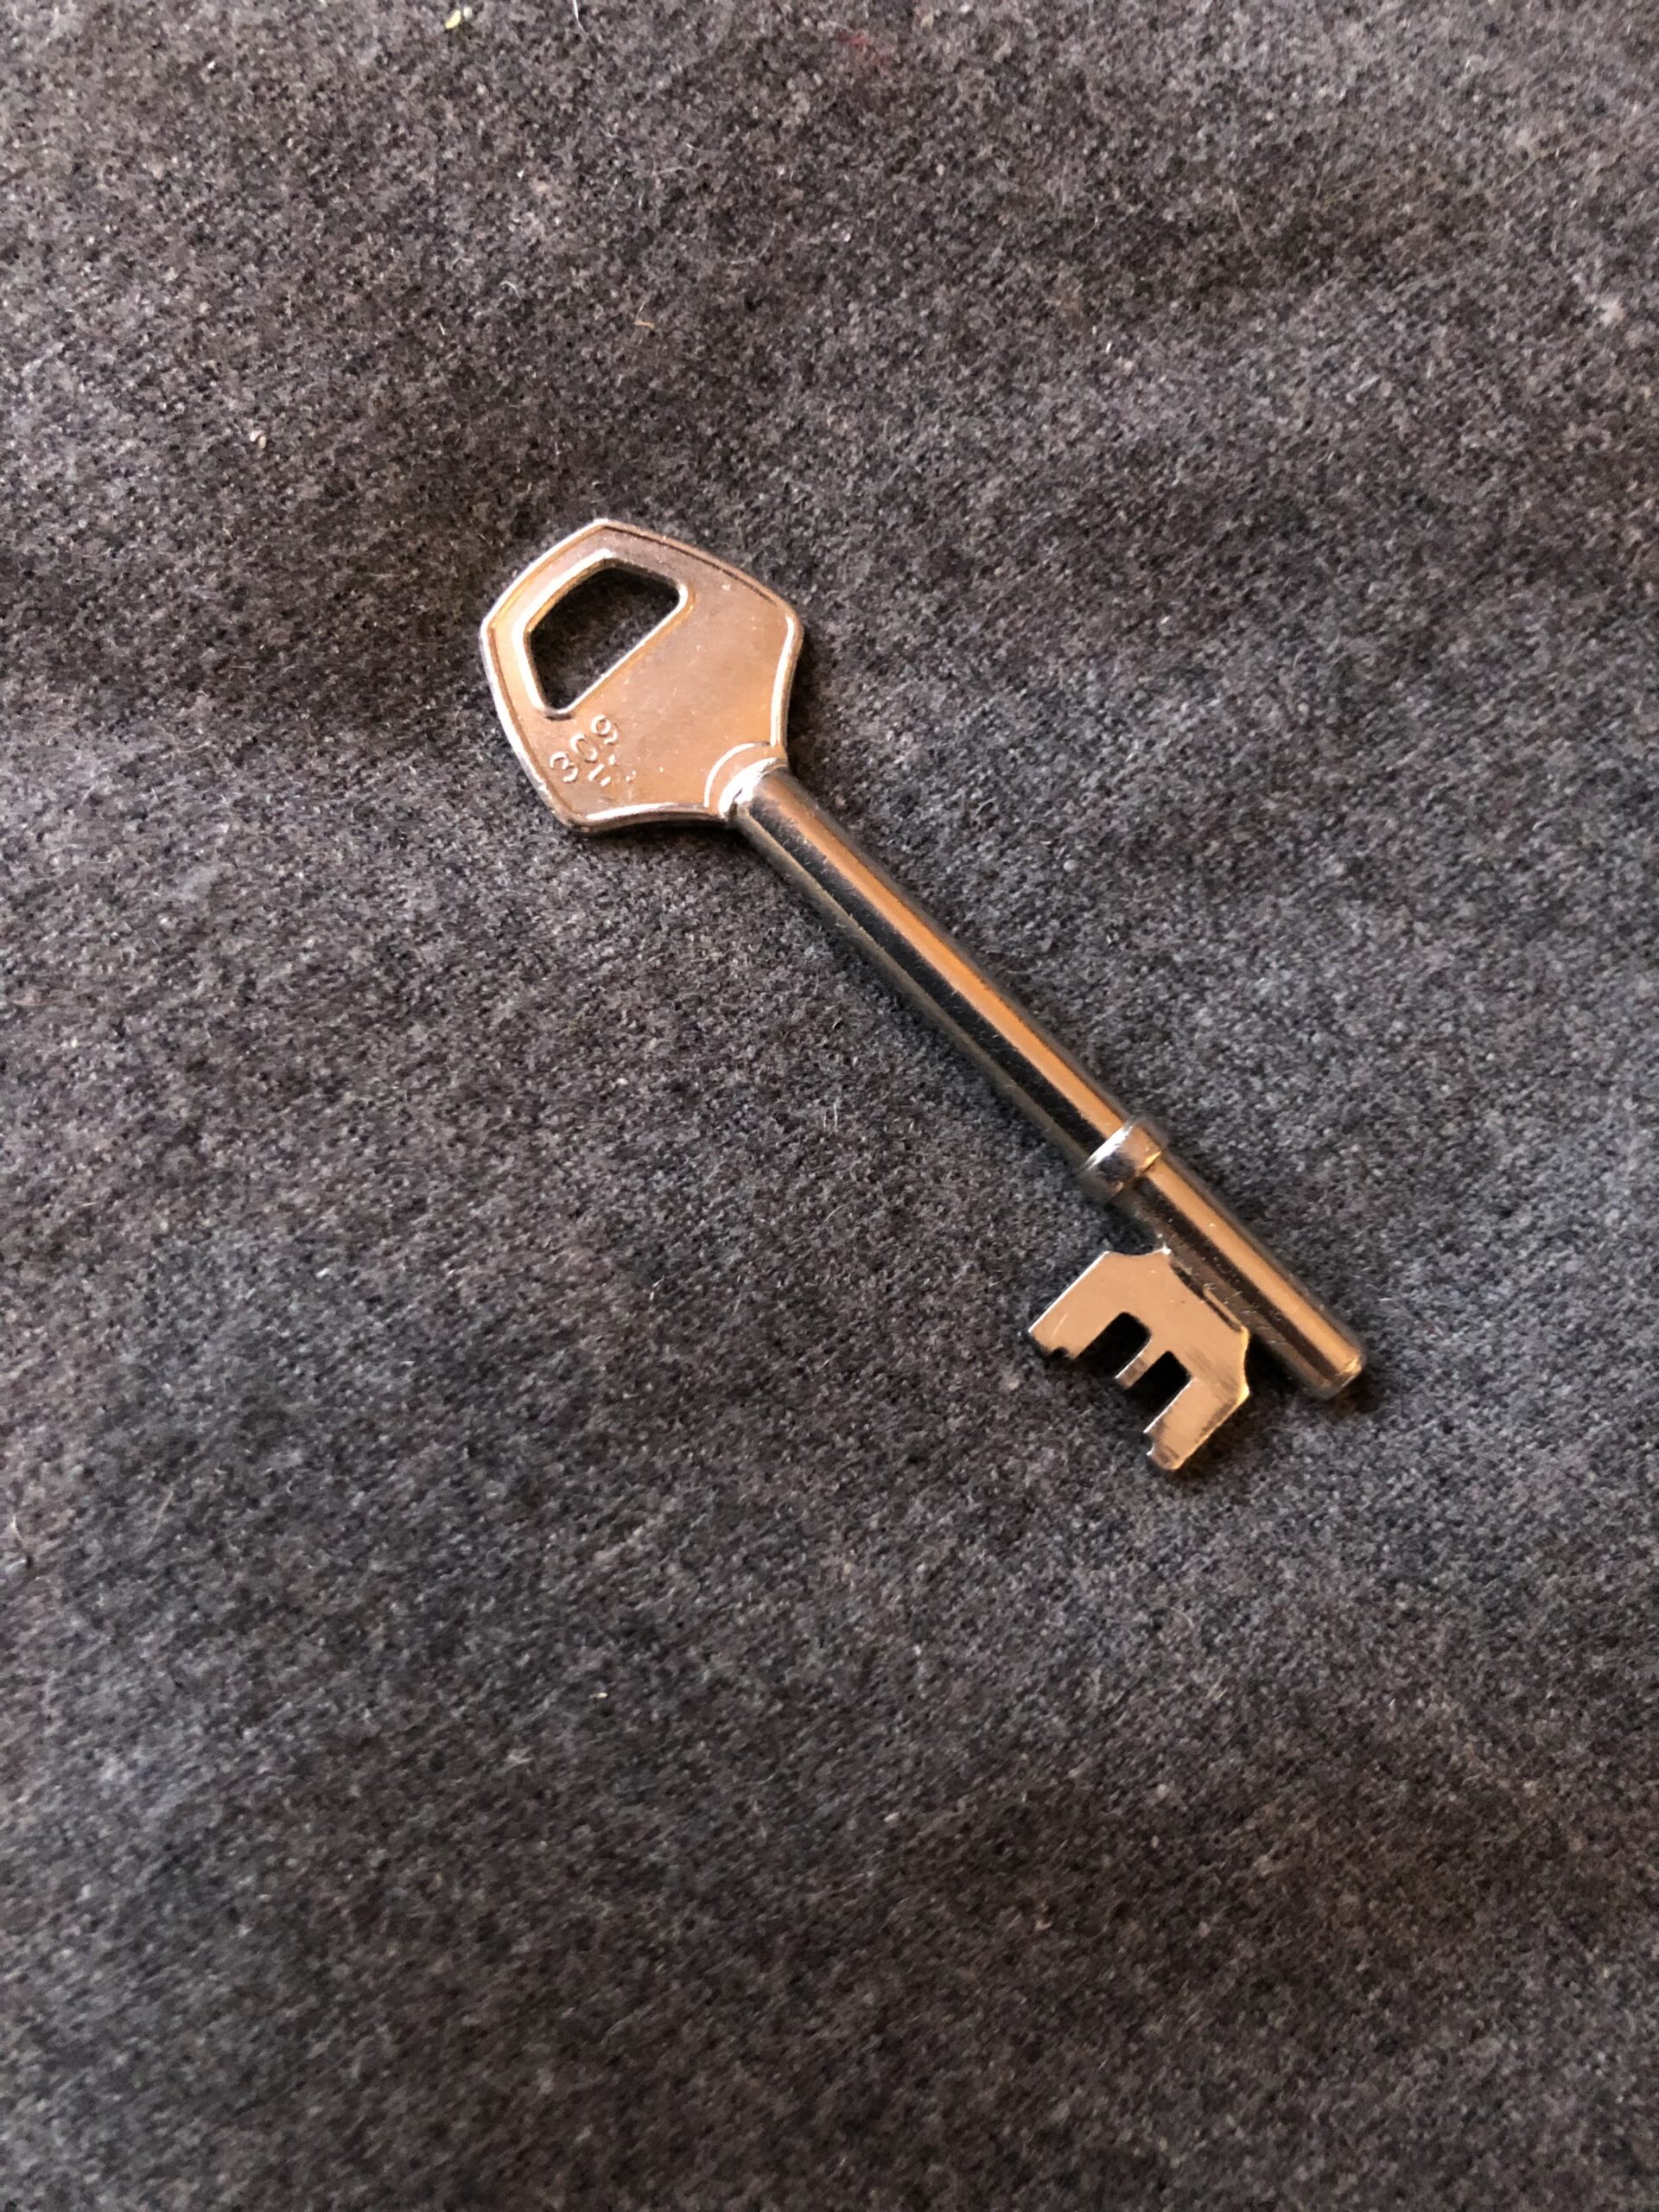 En nyckel utan lås?